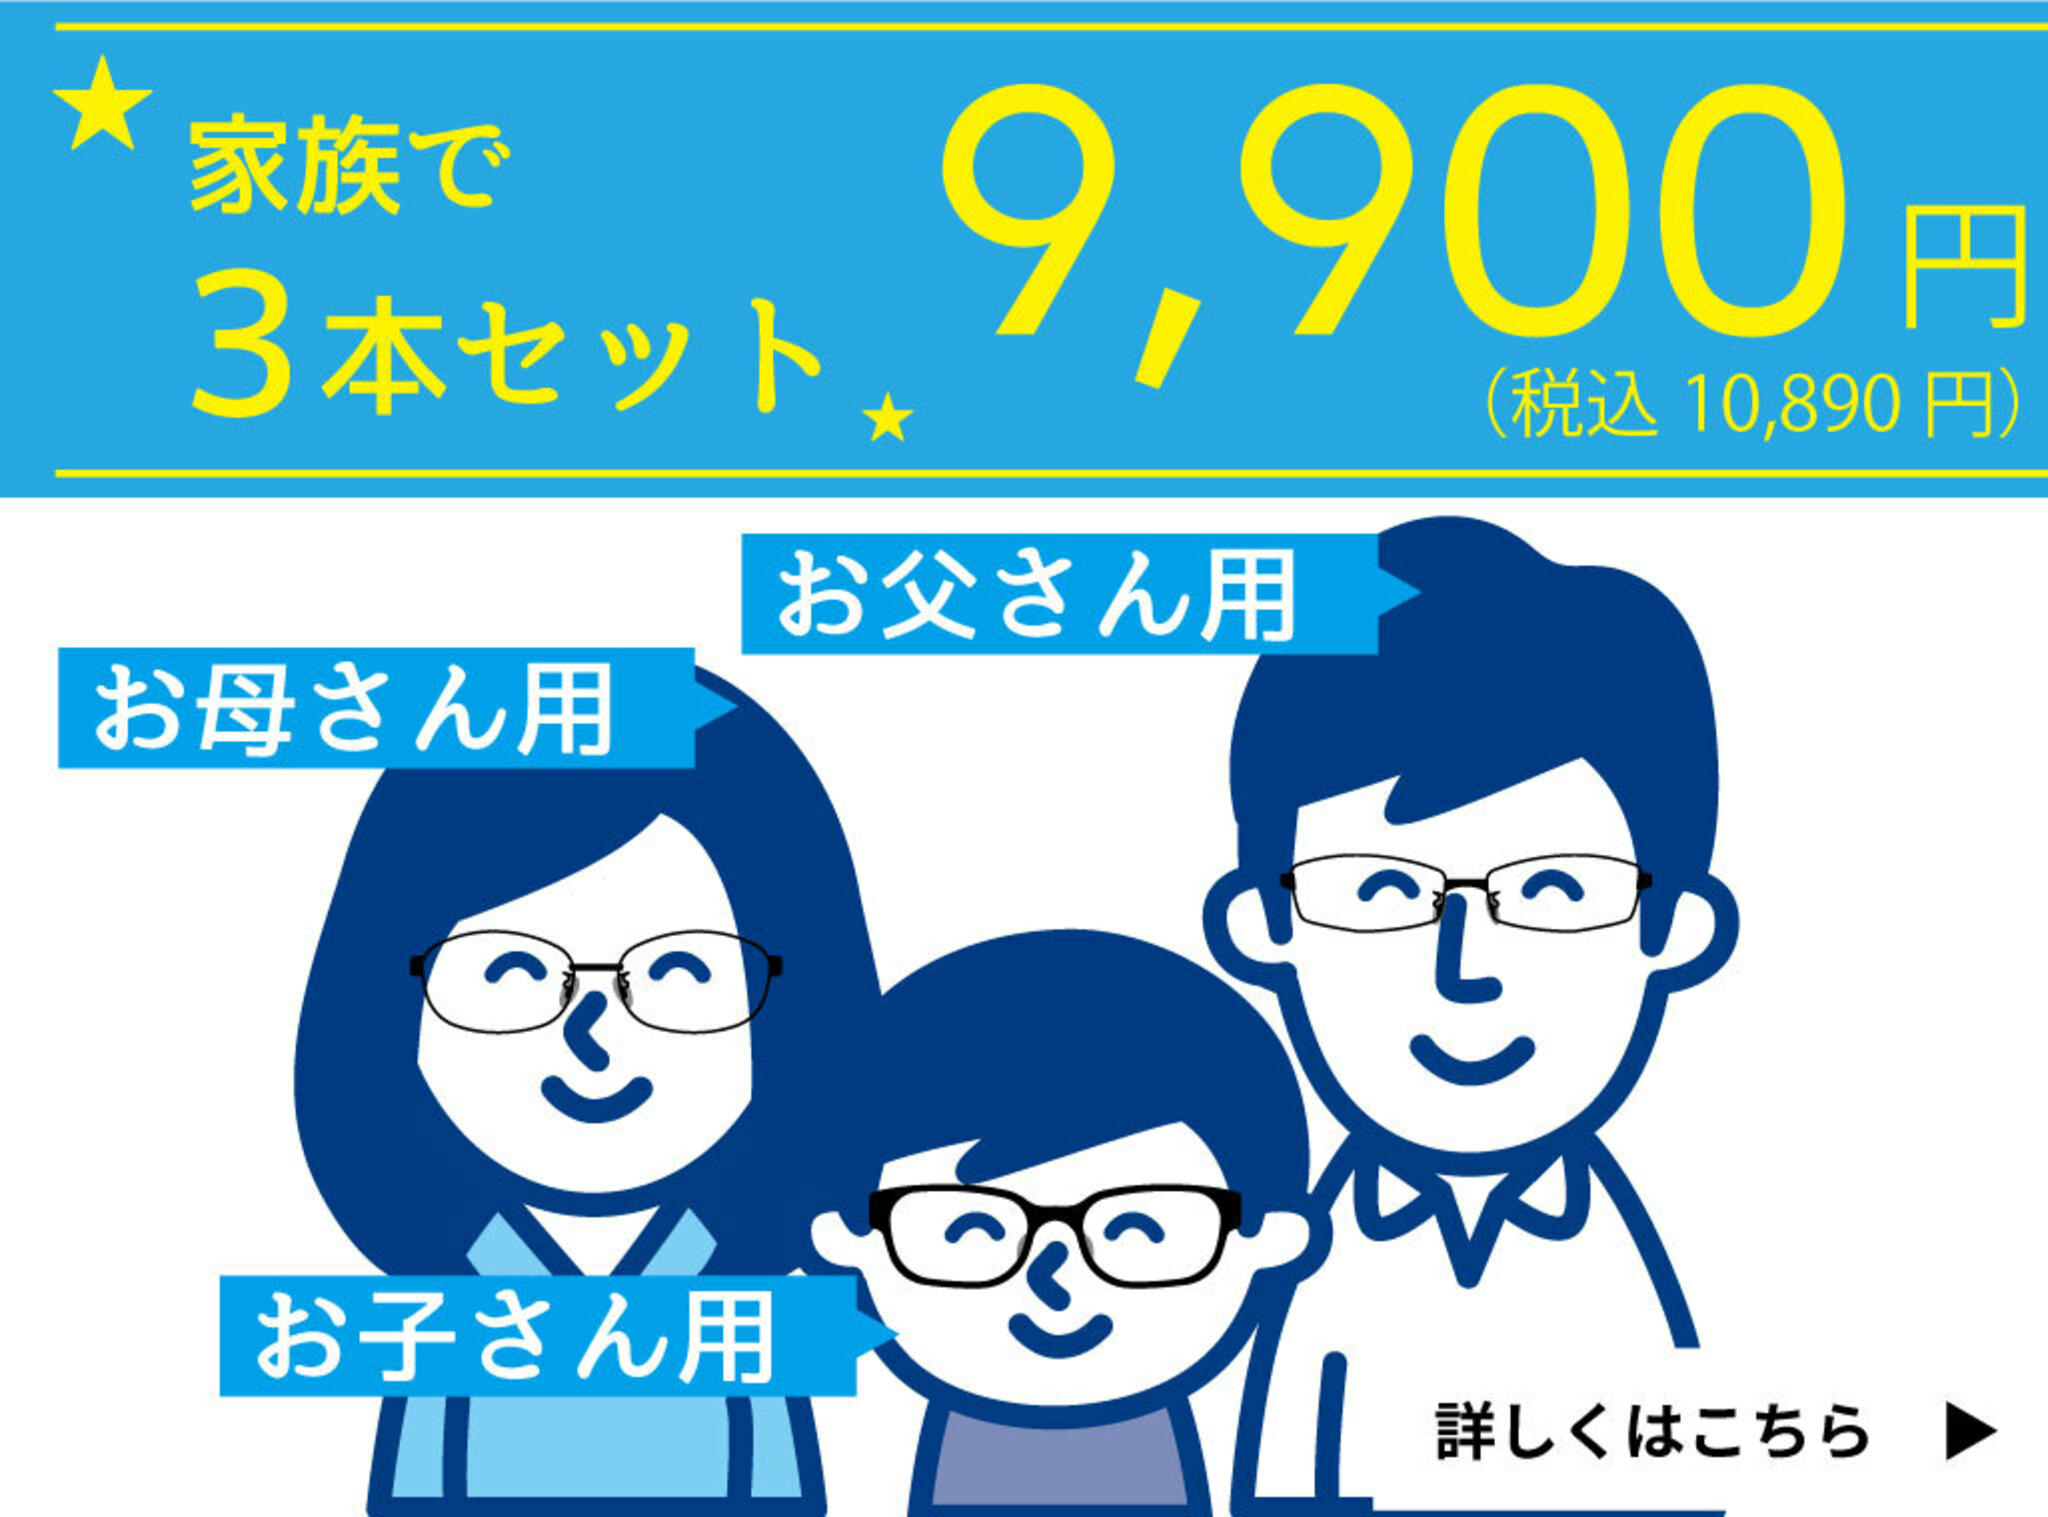 ドクターアイズ 鳥取米子店からのお知らせ(家族で買えるメガネ3本セット )に関する写真